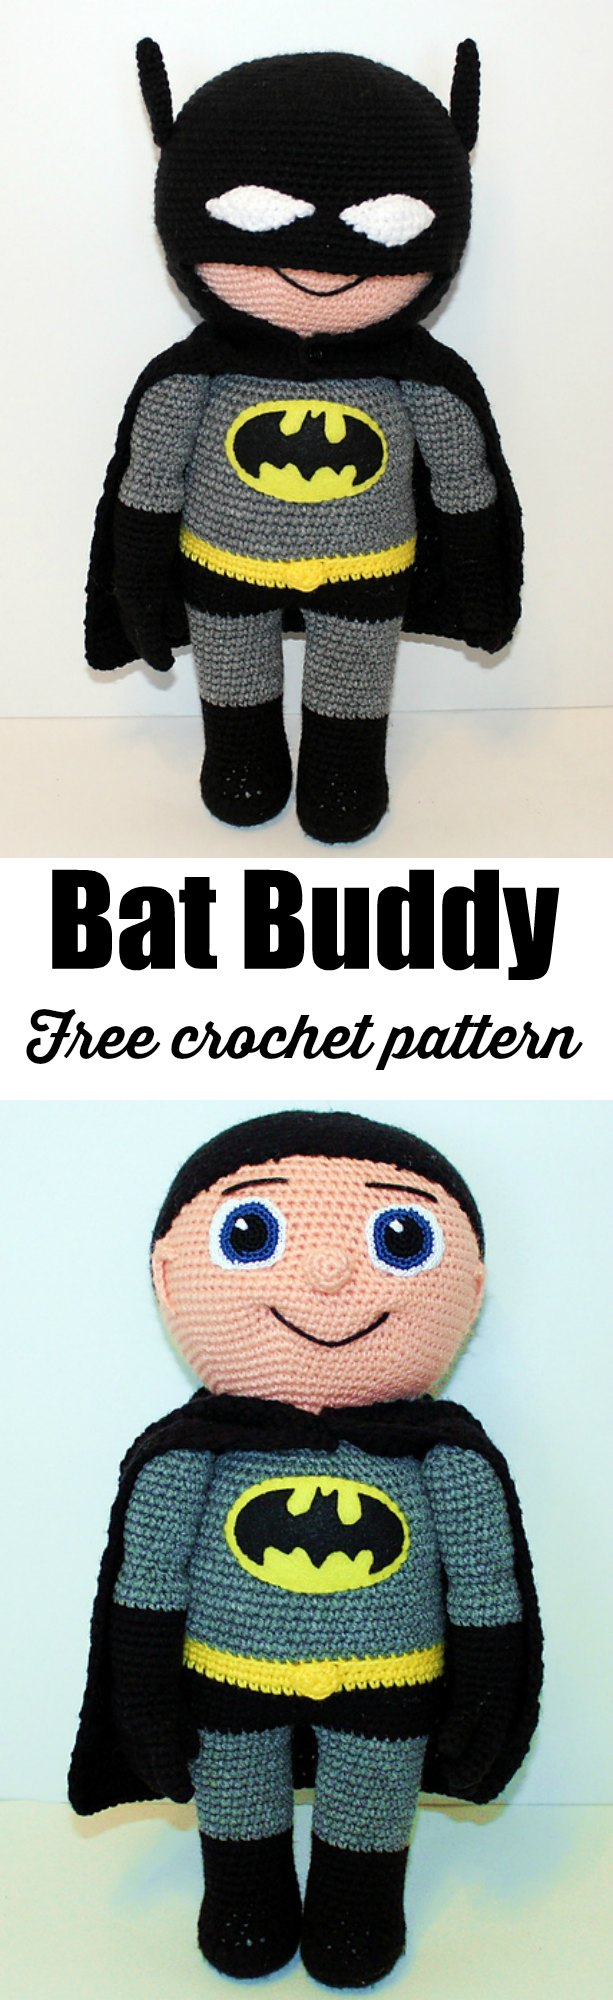 Crochet Batman Hat Pattern Batman Crochet Amigurumi Pattern Crochet News